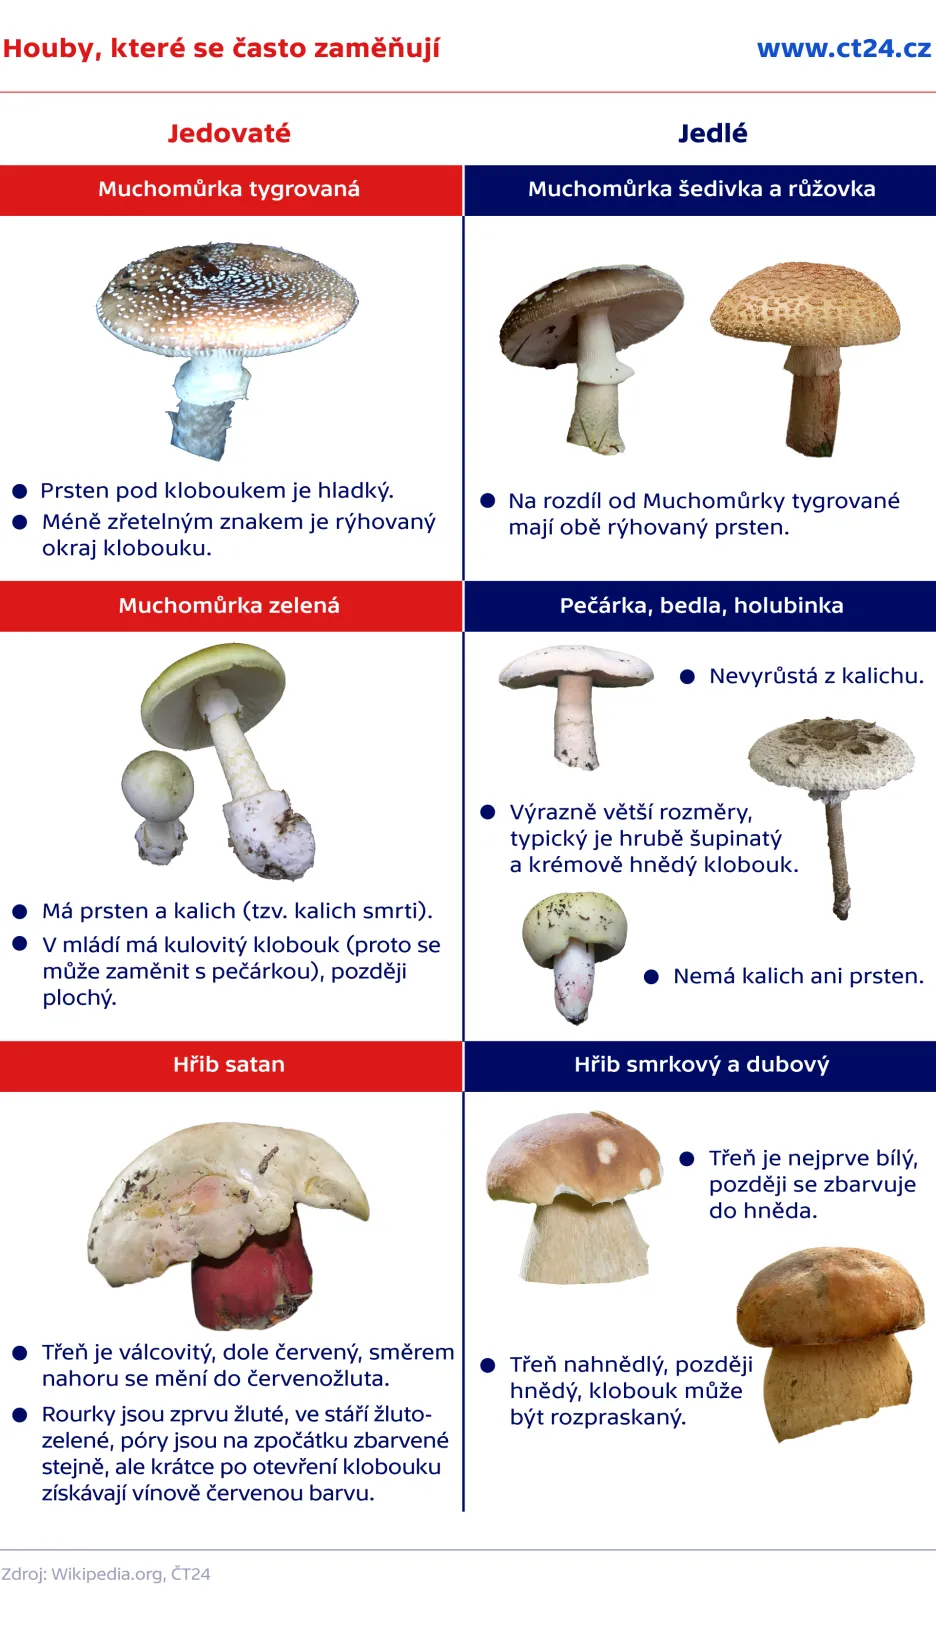 Jaké jsou jedovaté houby?